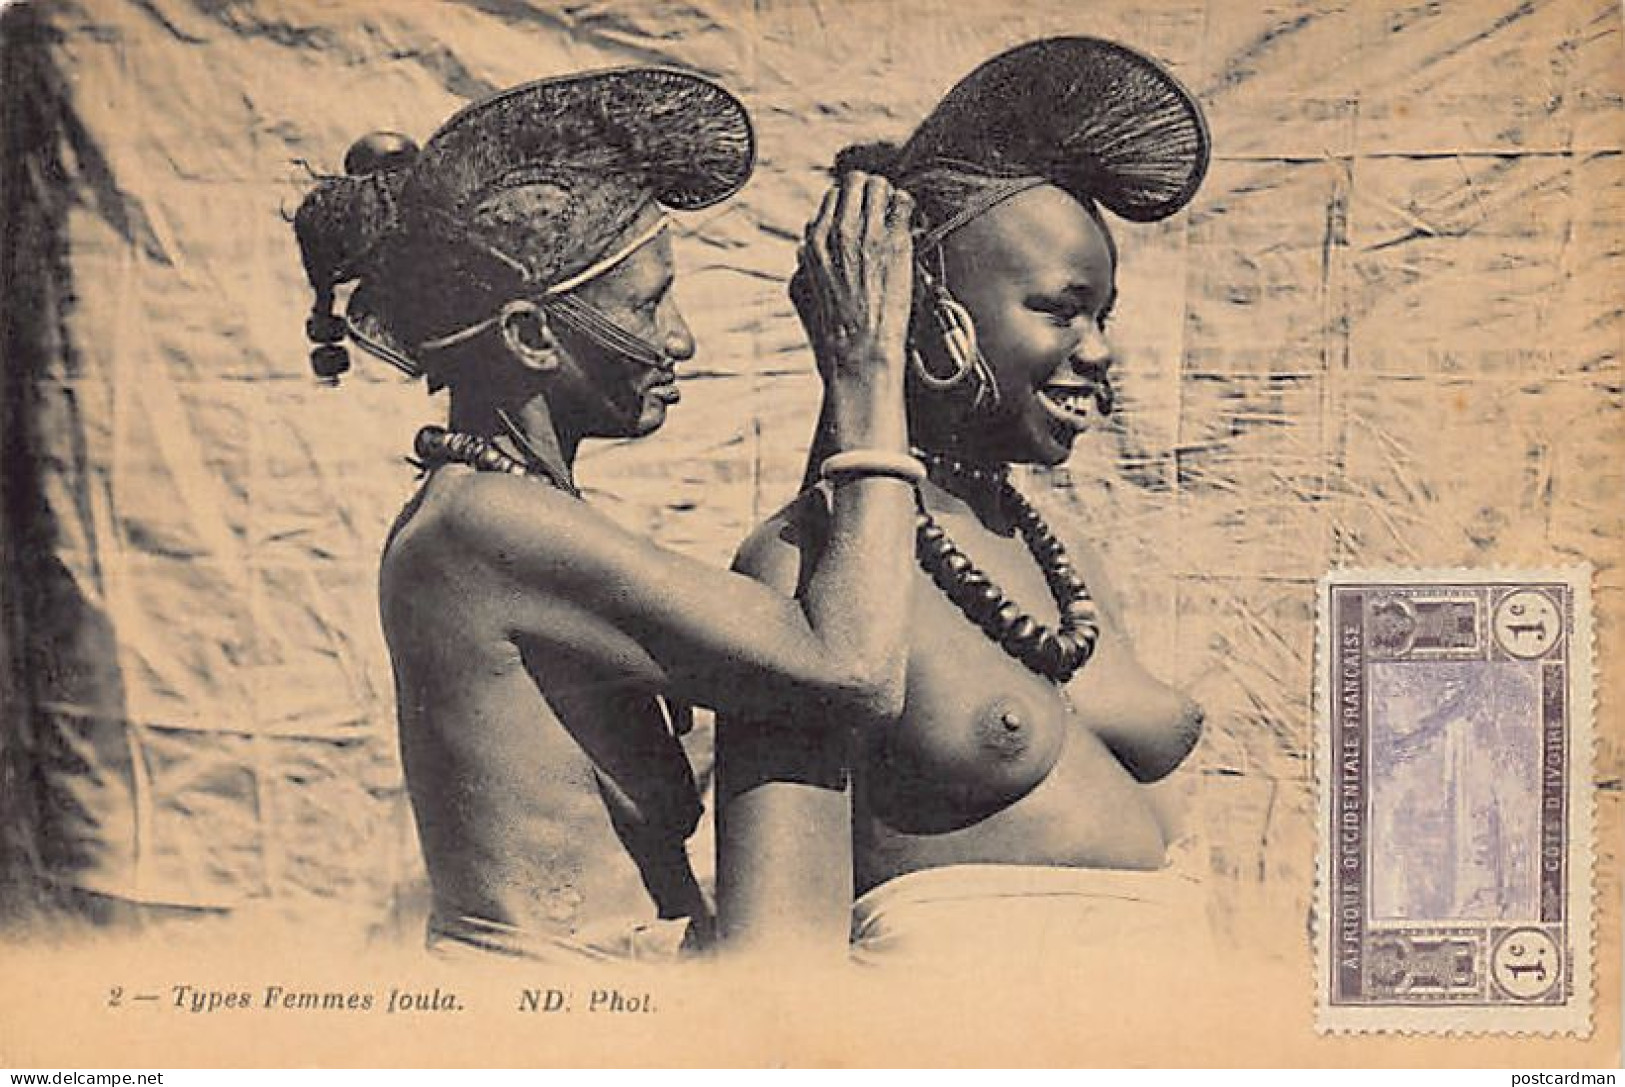 Guinée Conakry - NU ETHNIQUE - Types De Femmes Peuls - Publ. Neurdein ND Phot. 2 - Guinea